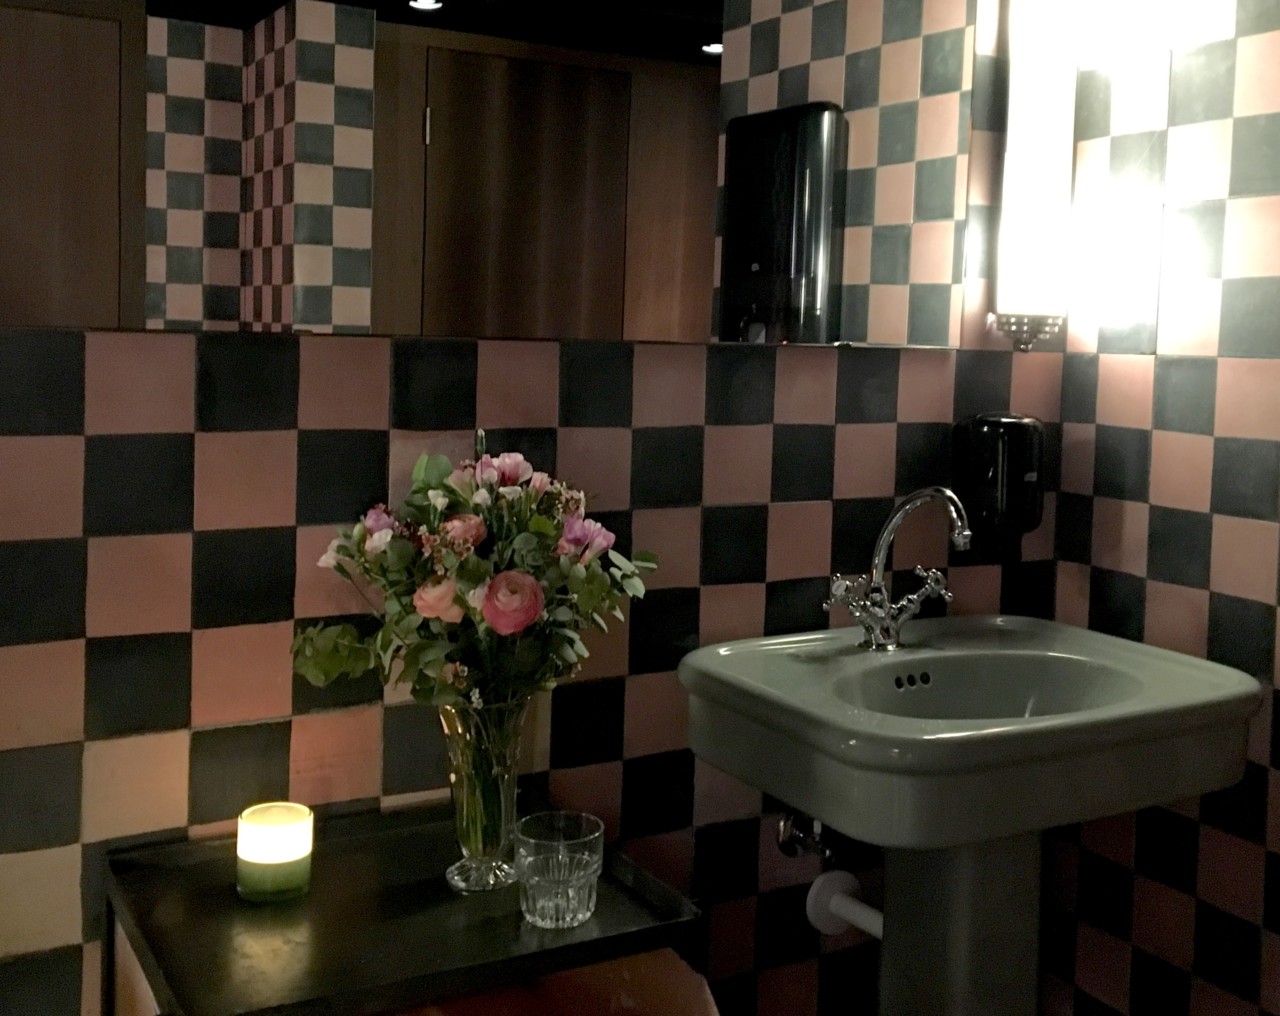 Farbig, romantisch, grosszügig - das gibt es selten in einer Restauranttoilette. Foto: Lunchgate/Simone